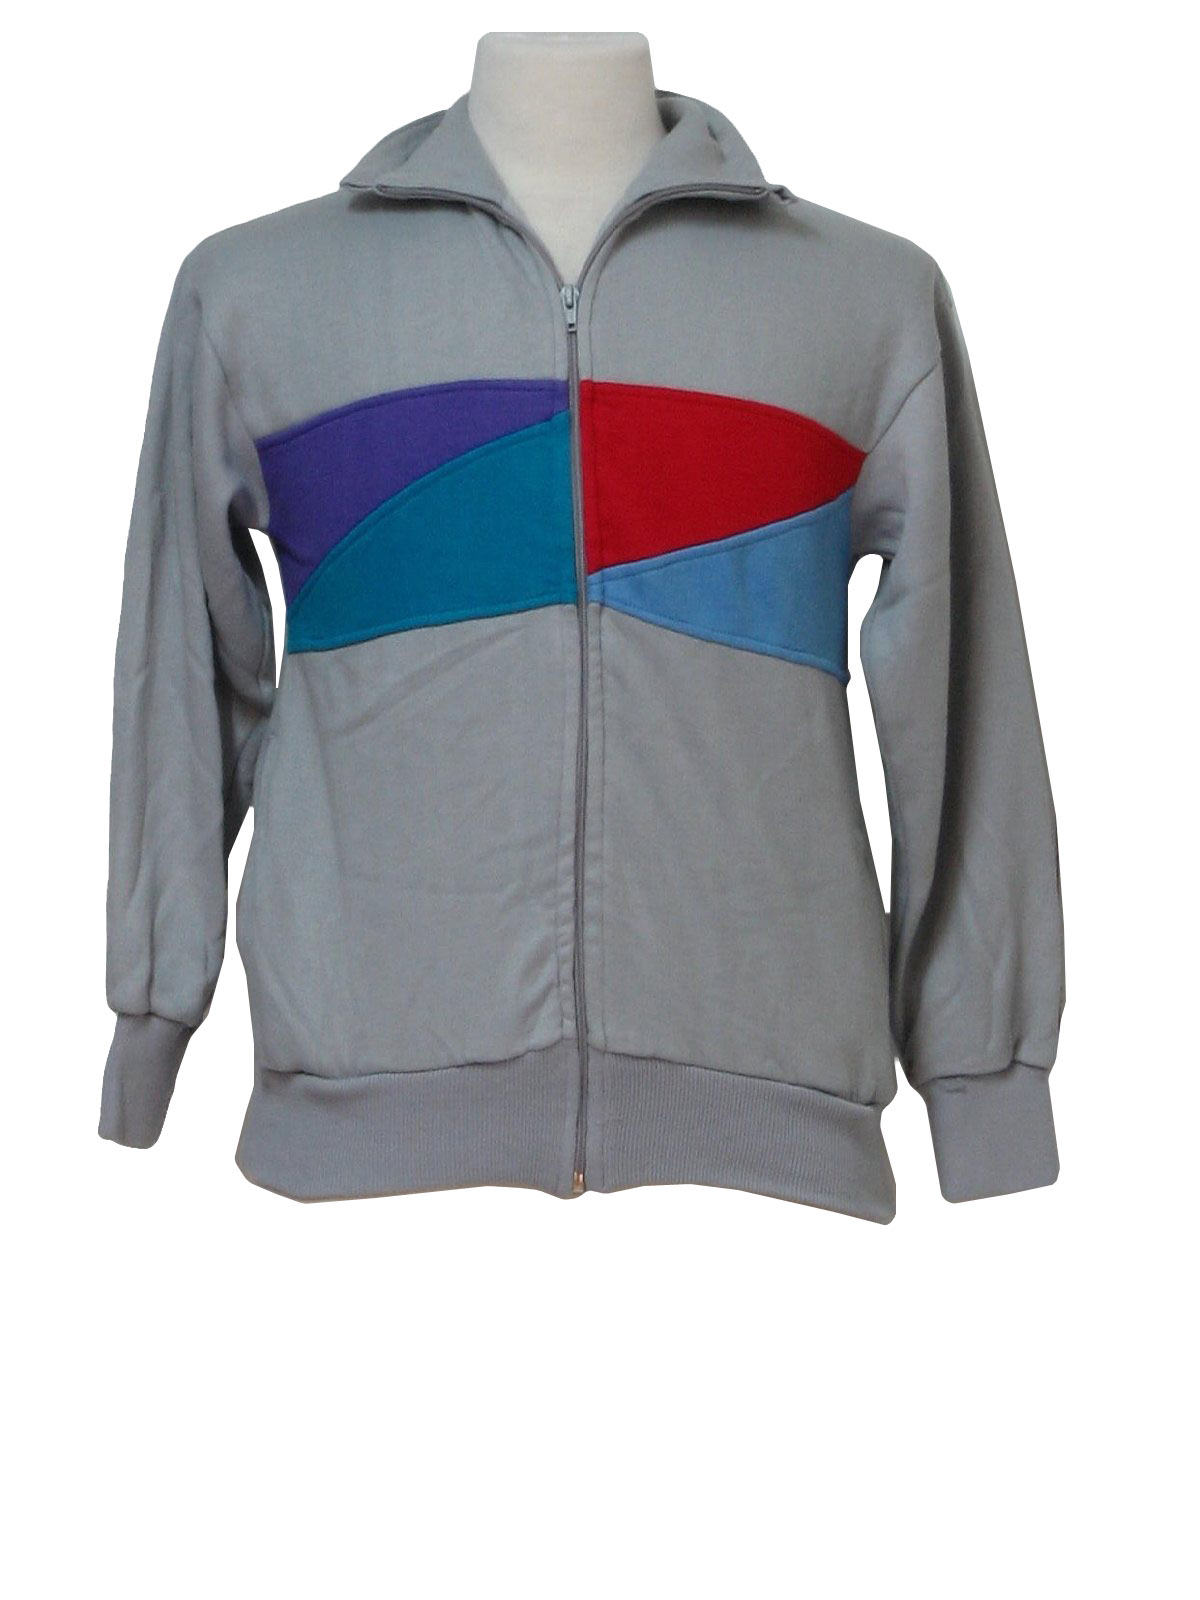 80s Jacket (Sportswear): 80s -Sportswear- Mens grey, blue, red